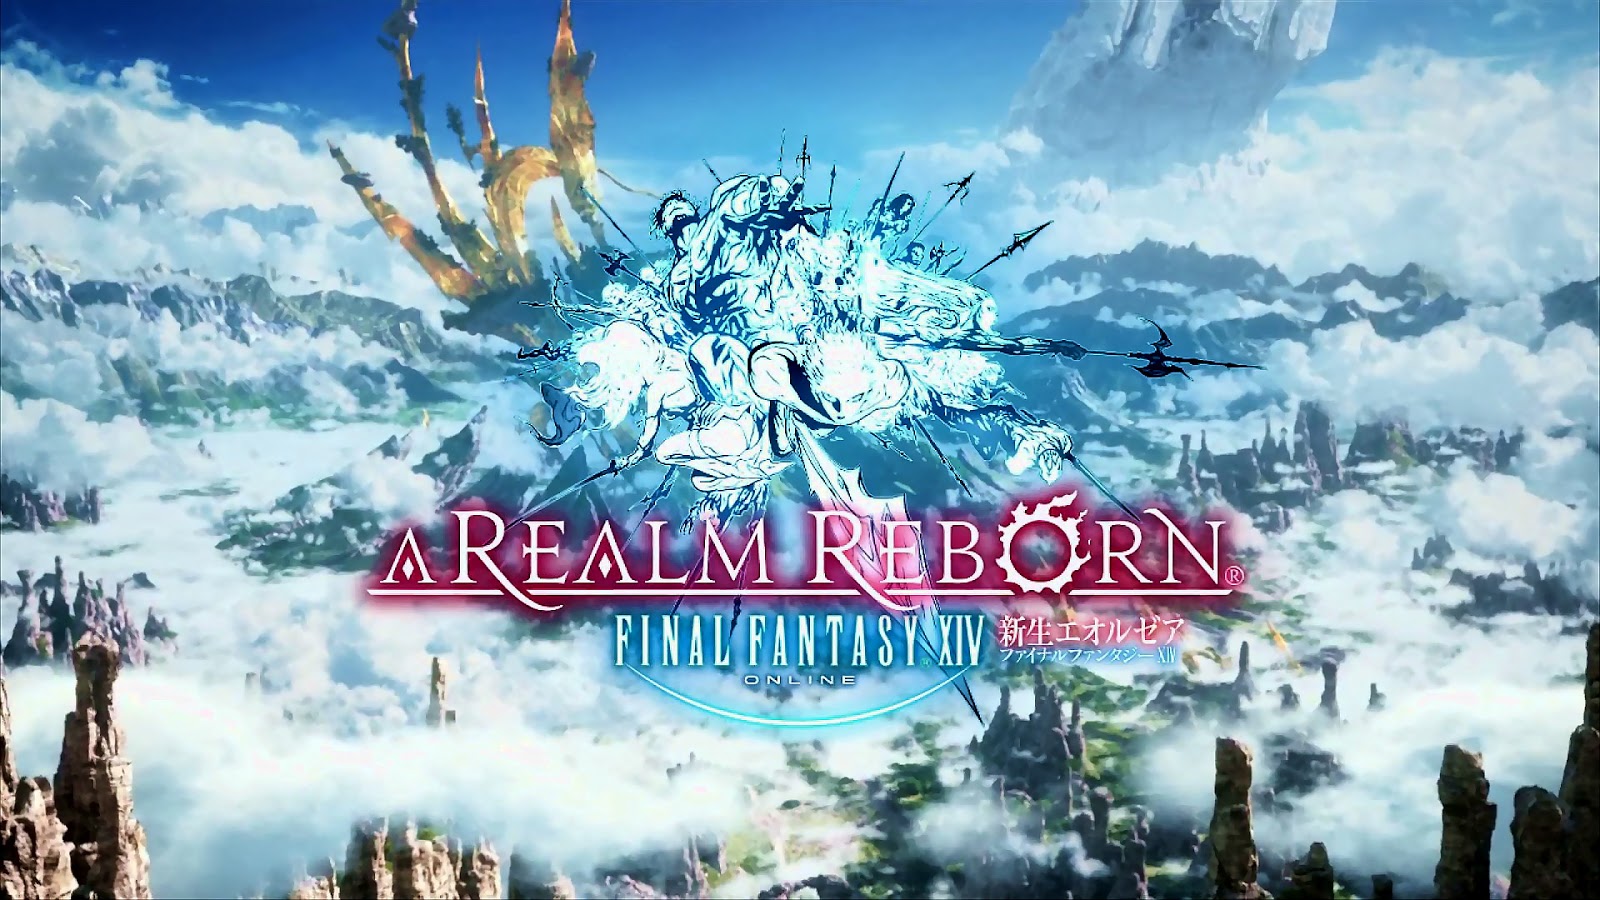 Final Fantasy A Realm Reborn Wartungsarbeiten vom 26. – 27. März